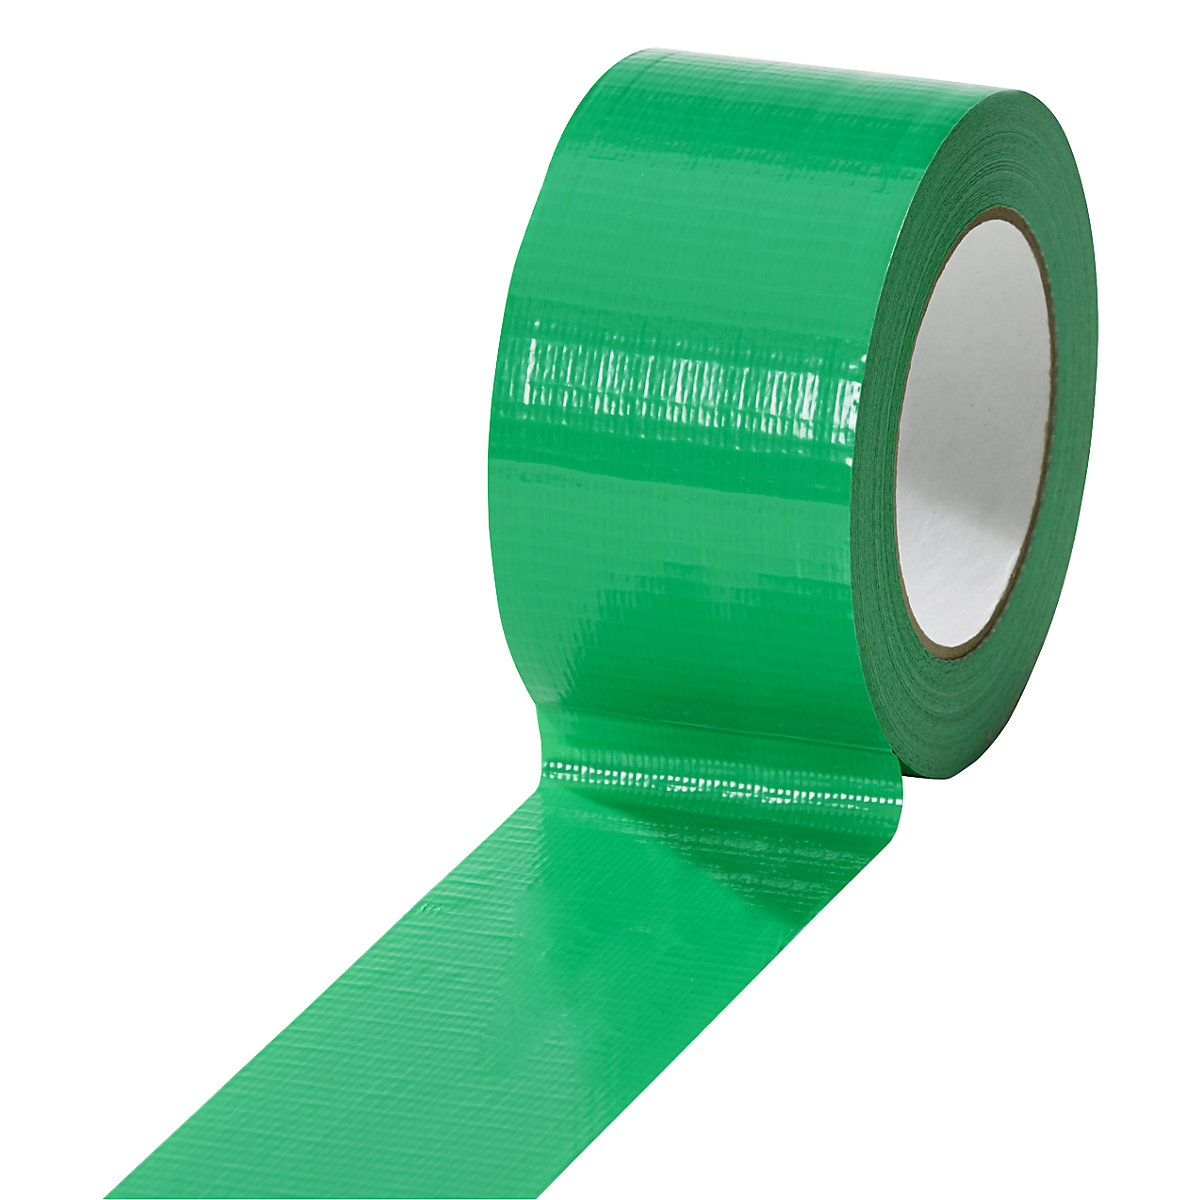 Cinta de tejido, en diferentes colores, UE 18 rollos, verde, anchura de cinta 50 mm-17